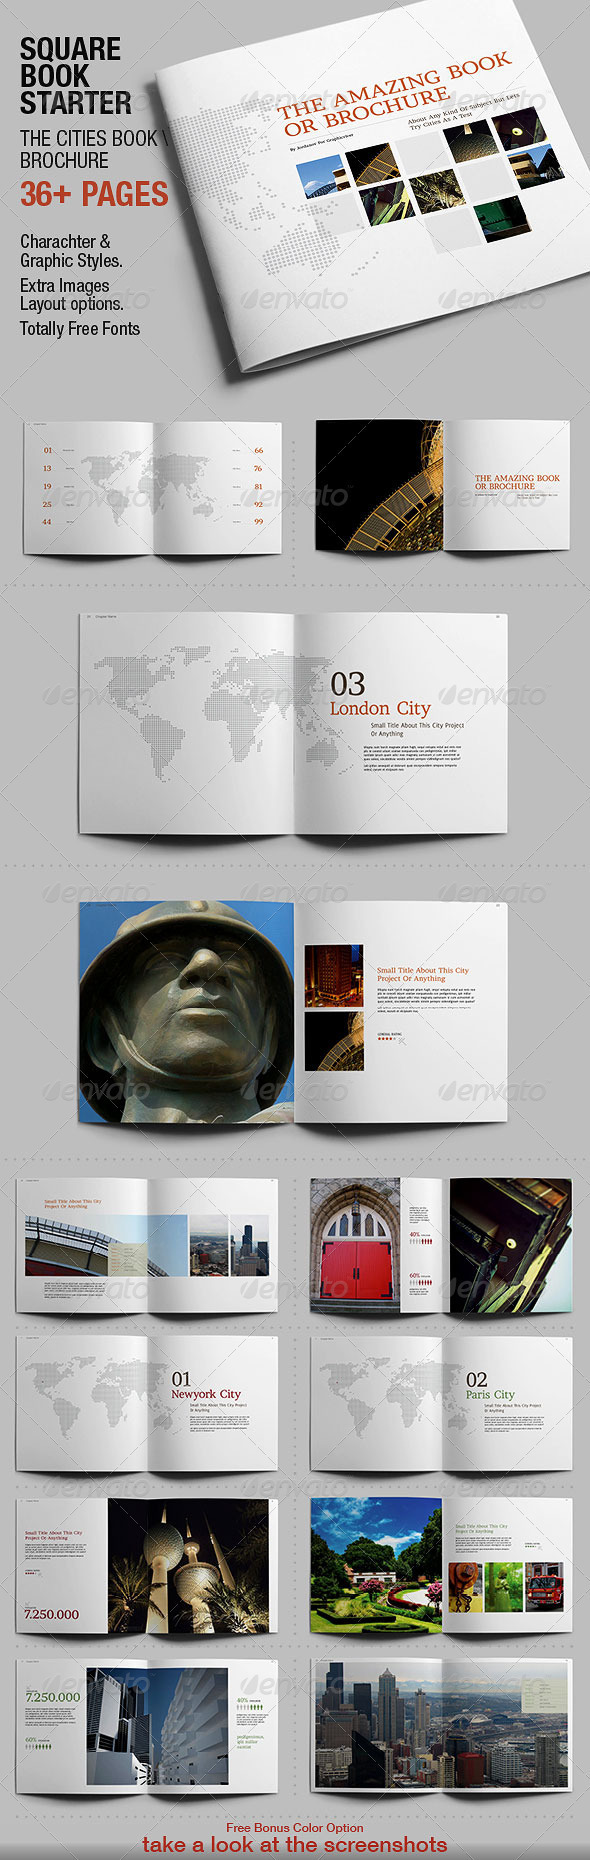 封面设计 画册设计 作品 版式 杂志 内页 封面 排版 创意画册